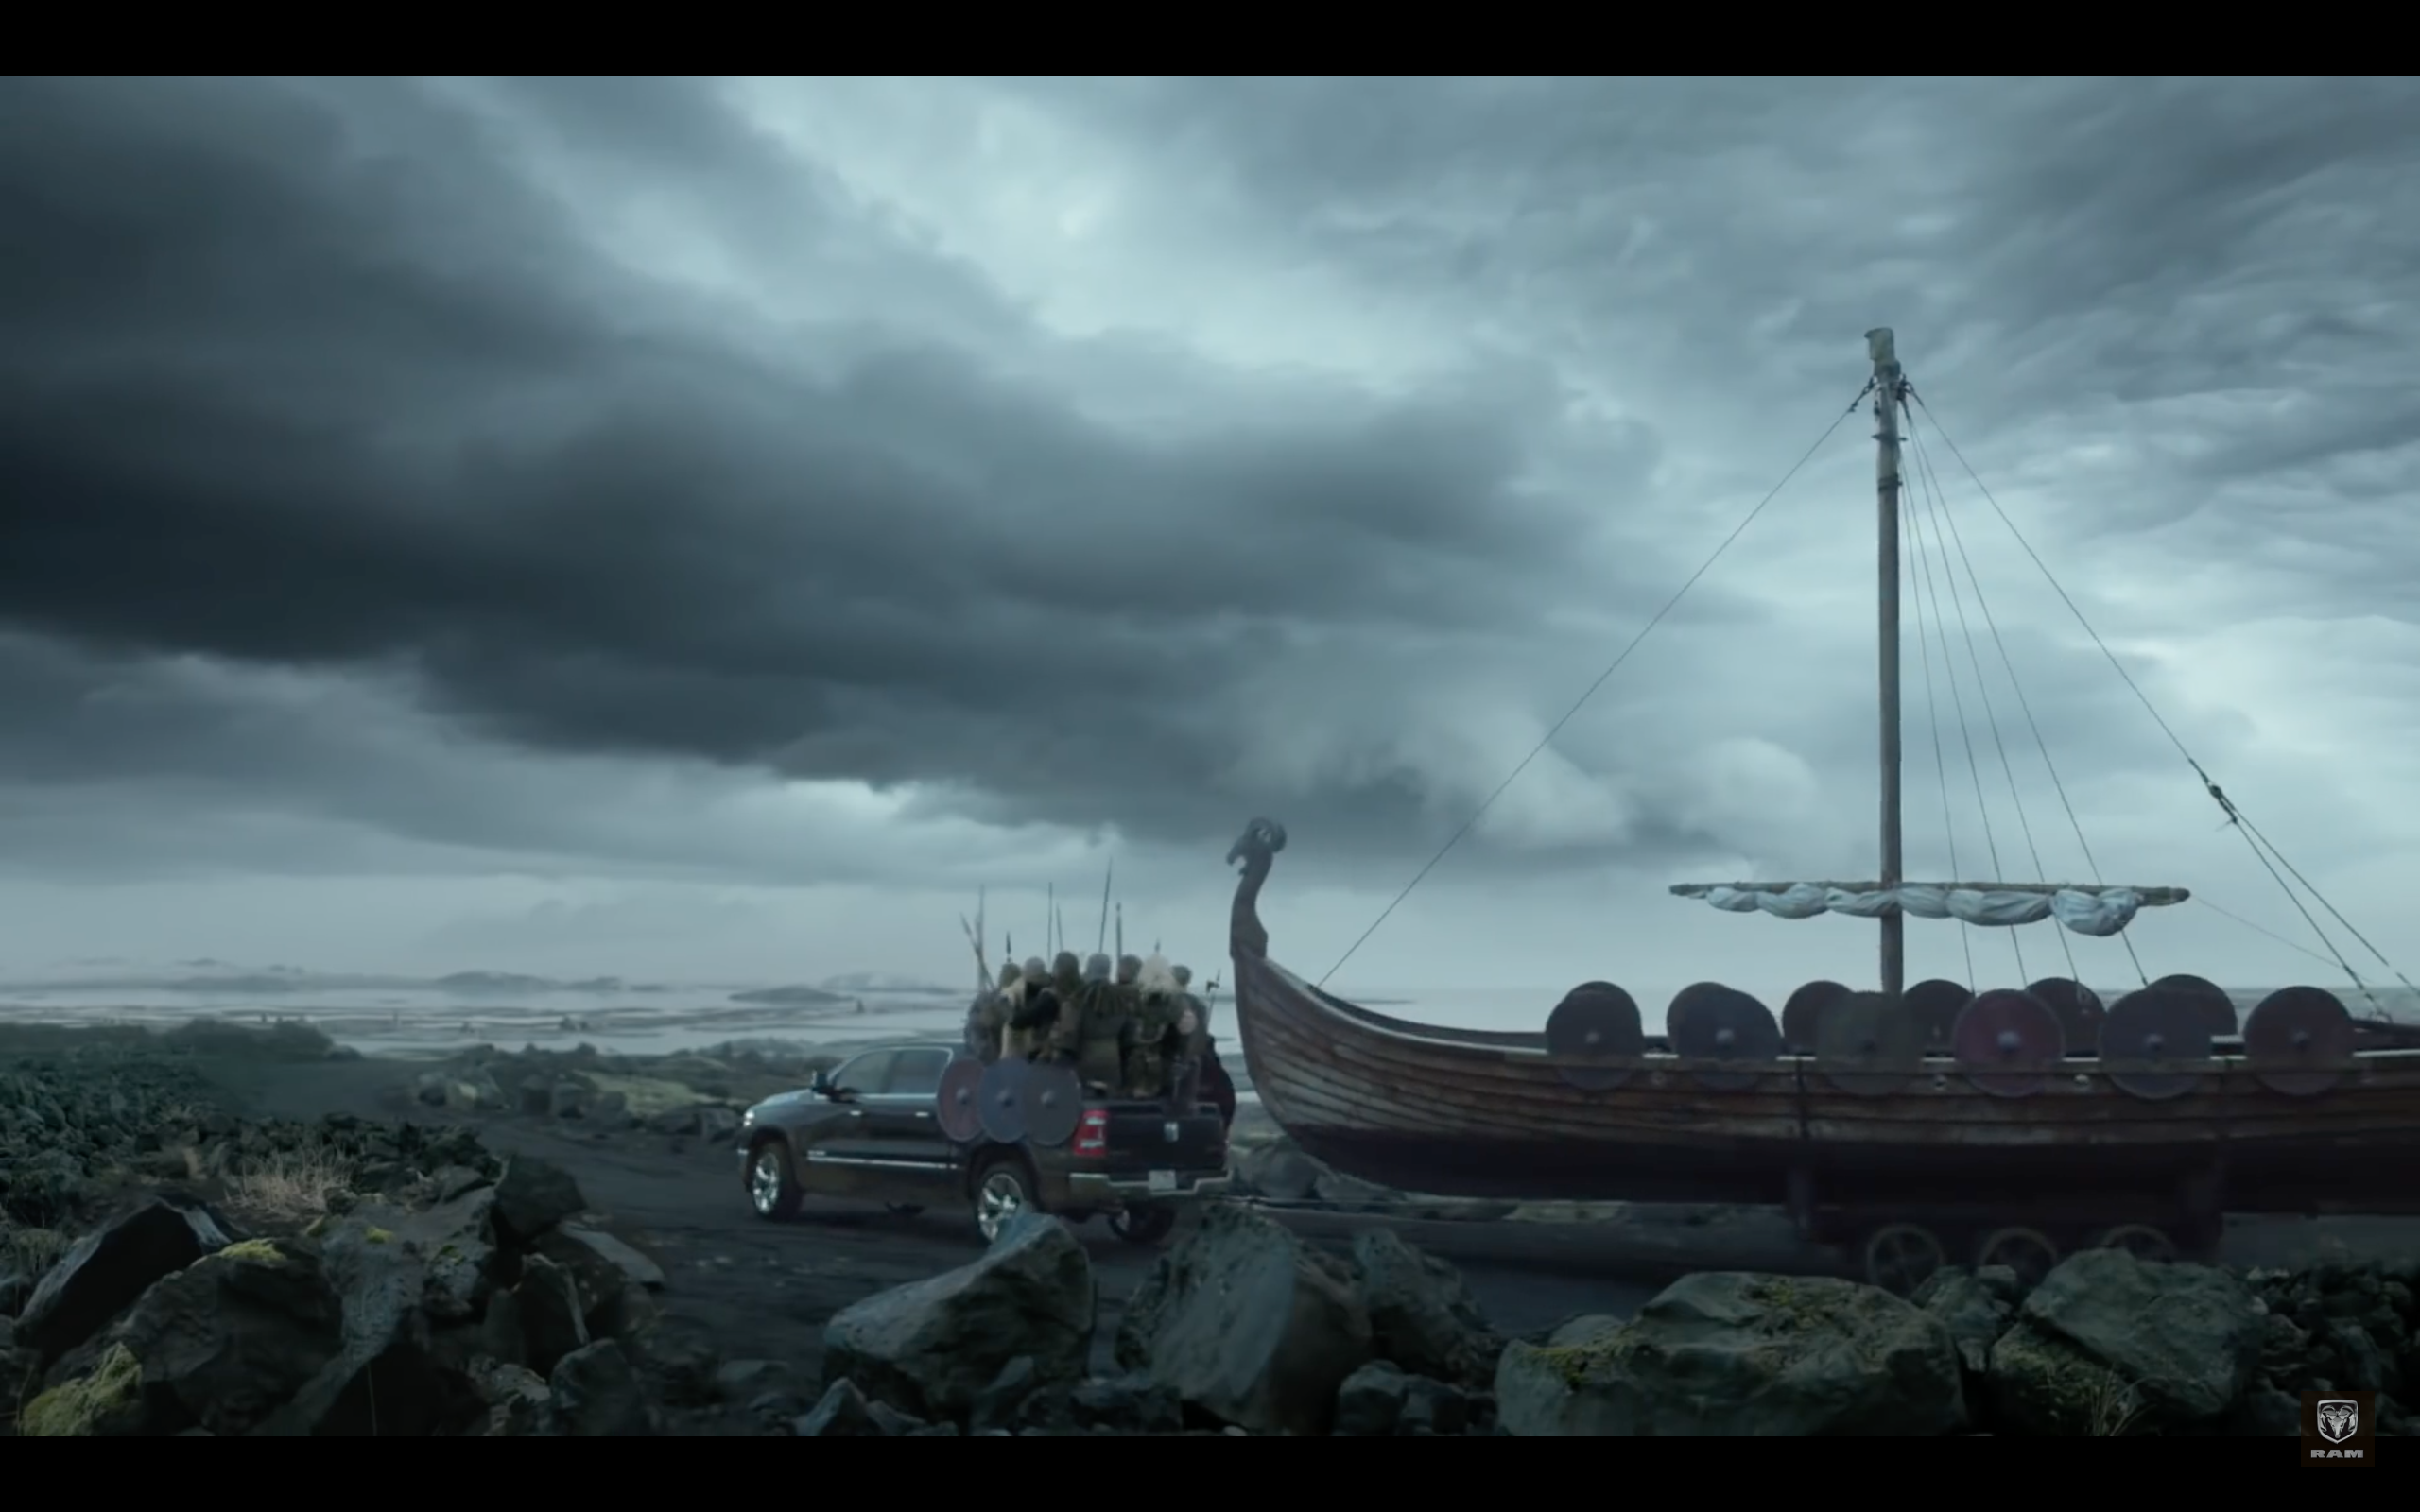 Icelandic Vikings Dominate in Joe Pytkas' Super Bowl Commercial for Dodge Ram